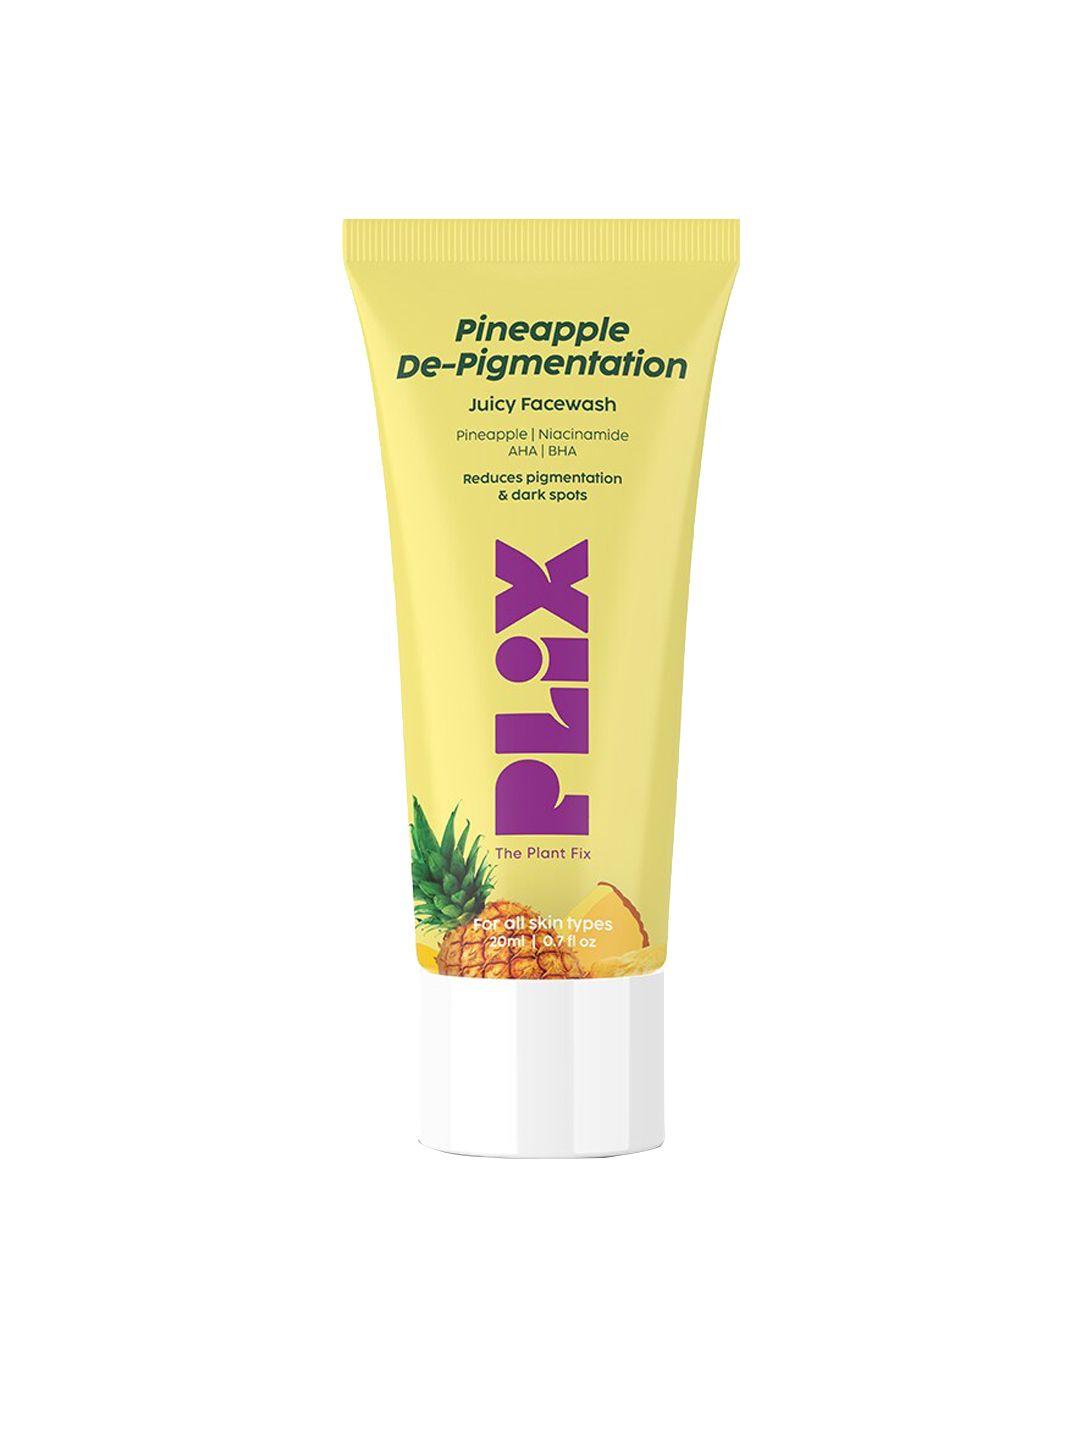 plix the plant fix pineapple de-pigmentation foaming face wash - 20ml